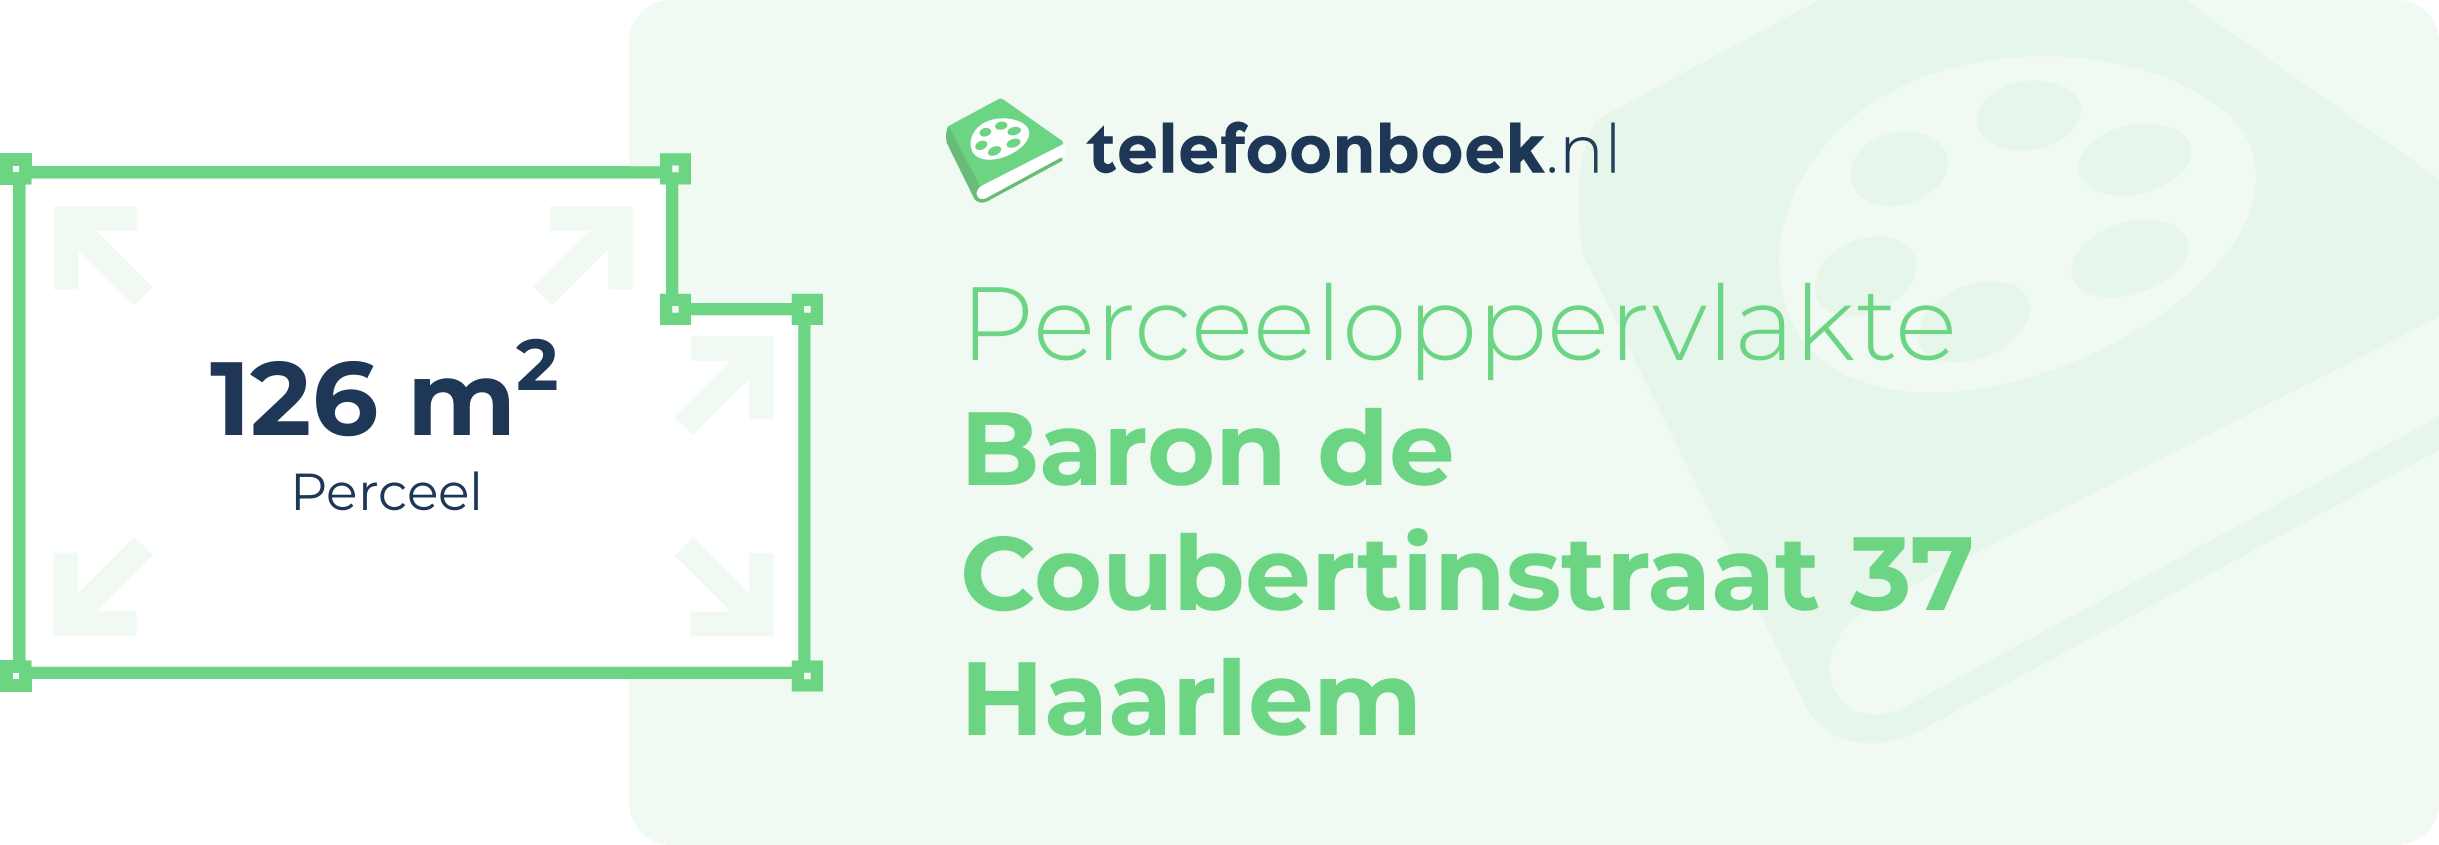 Perceeloppervlakte Baron De Coubertinstraat 37 Haarlem